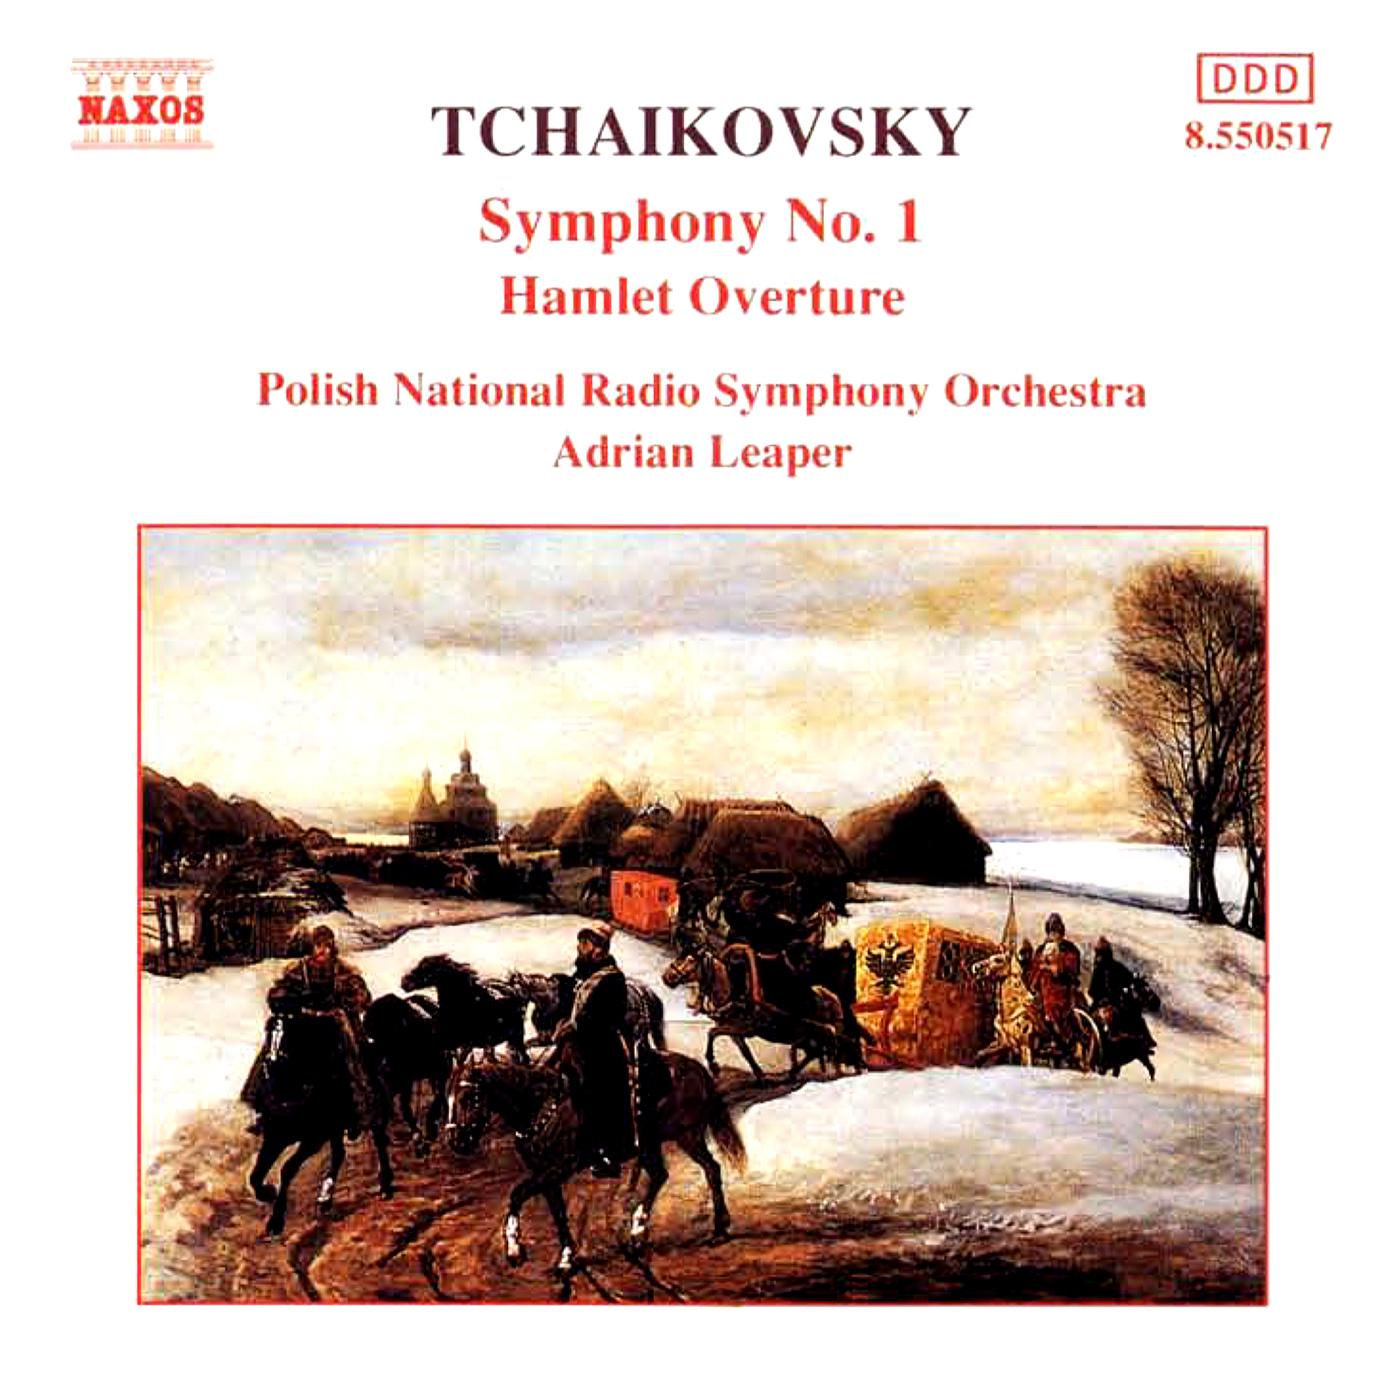 TCHAIKOVSKY: Symphony No. 1 / Hamlet Overture